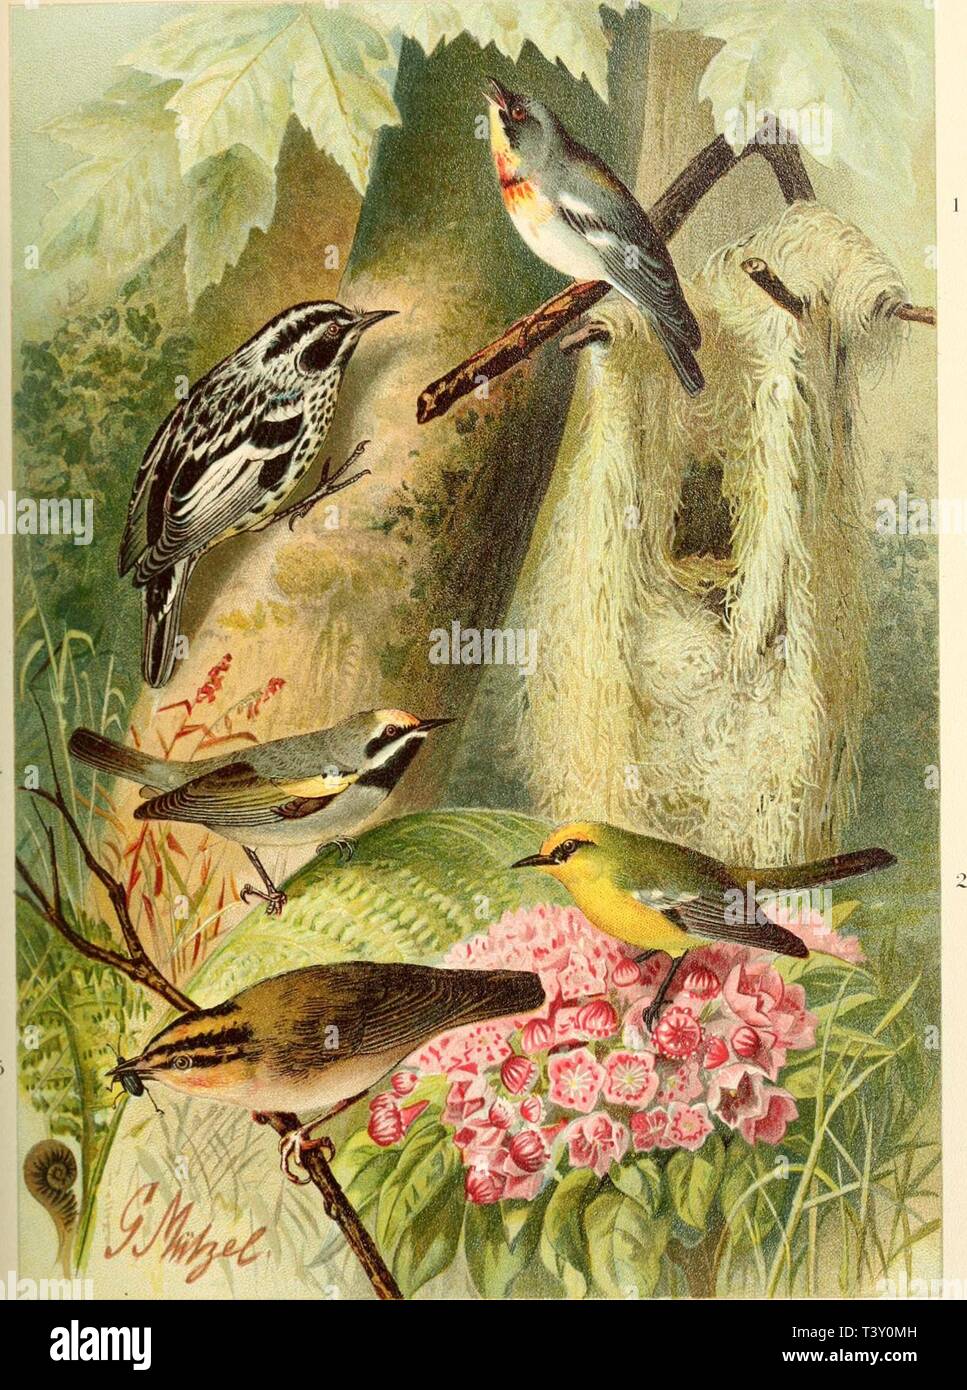 Archiv Bild ab Seite 218 von Die Nord-Amerikanische Vogelwelt (1889). Sterben Nord-Amerikanische Vogelwelt dienordamerikani 10 nehr Jahr: 1889 1. Co.MP.so' l'Hl. l'lS AMKKICA. NA AKV Li: Ich,. MI. TllOPHII - ein PINL". S HiÜQw. 3. . MXIOTILTA SLOWAKEI Vieill. IIKI. MIXTIIOPHILA CHRVSOPTERA RkUv iiiüAiiriiKprs - | -; RMi" () Rr. s Bp M EISENSANGER. BLAUFLÜGELSÄN 6ER. KLETTERSÄNGER. GOLDFLÜGELSÄNGER. WURMSÄN GER. Par'ula V/arbler Blau-Wined Warbier. Schwarze und weiße Warbier. Golden-winged Warbier. Worm-eating Warbler Stockfoto